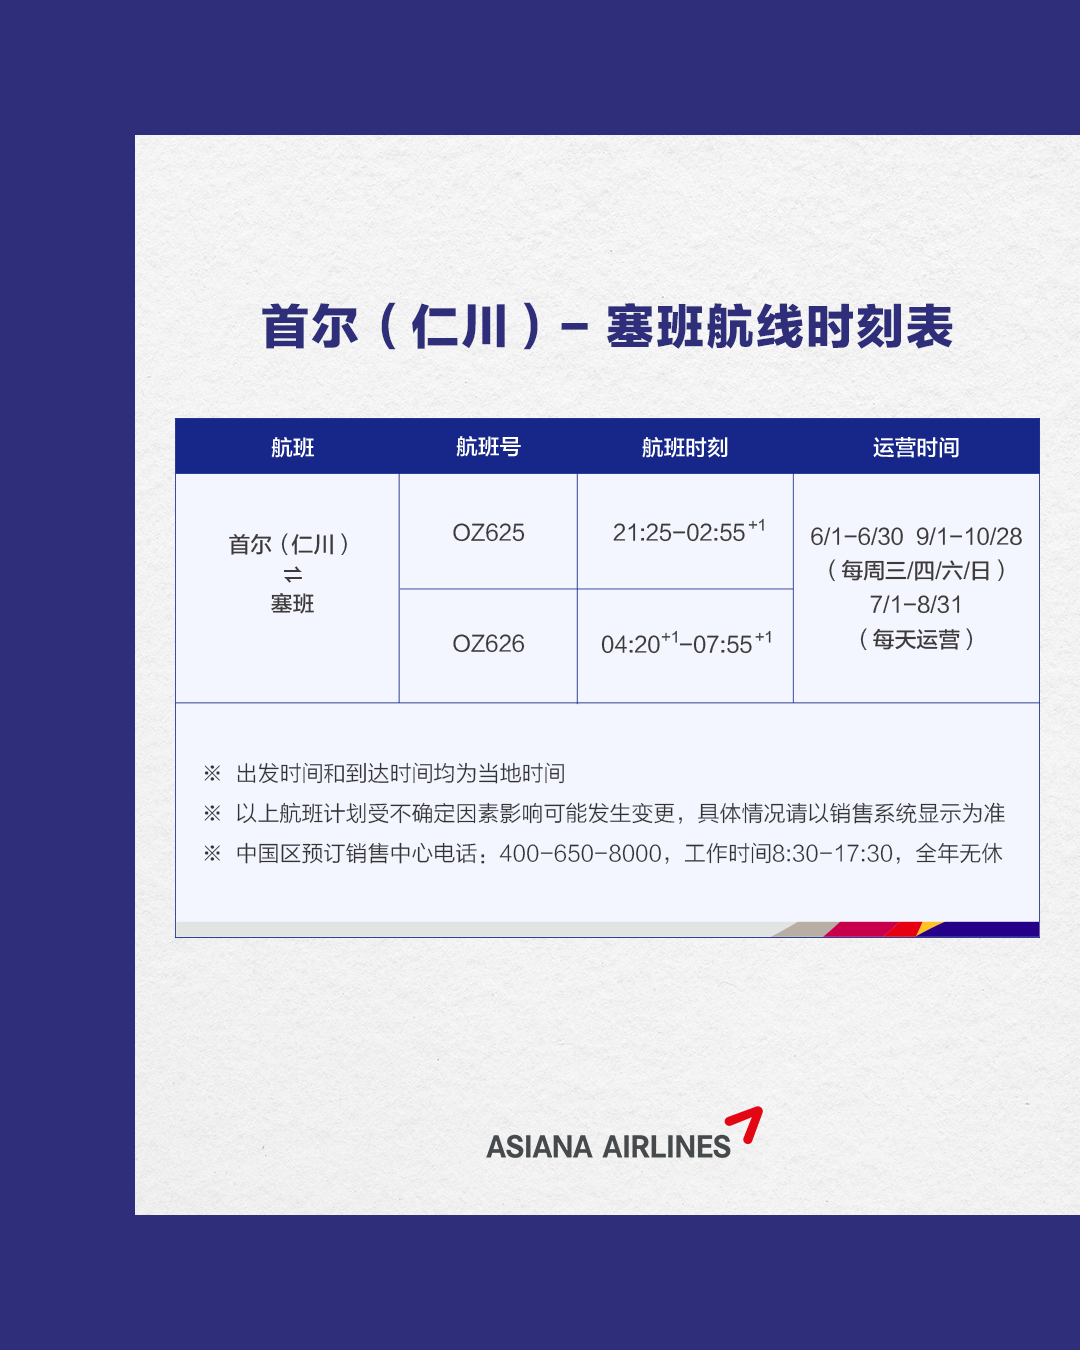 仁川-塞班航线夏季增班｜韩亚航空特推出“畅游塞班”系列优惠促销活动